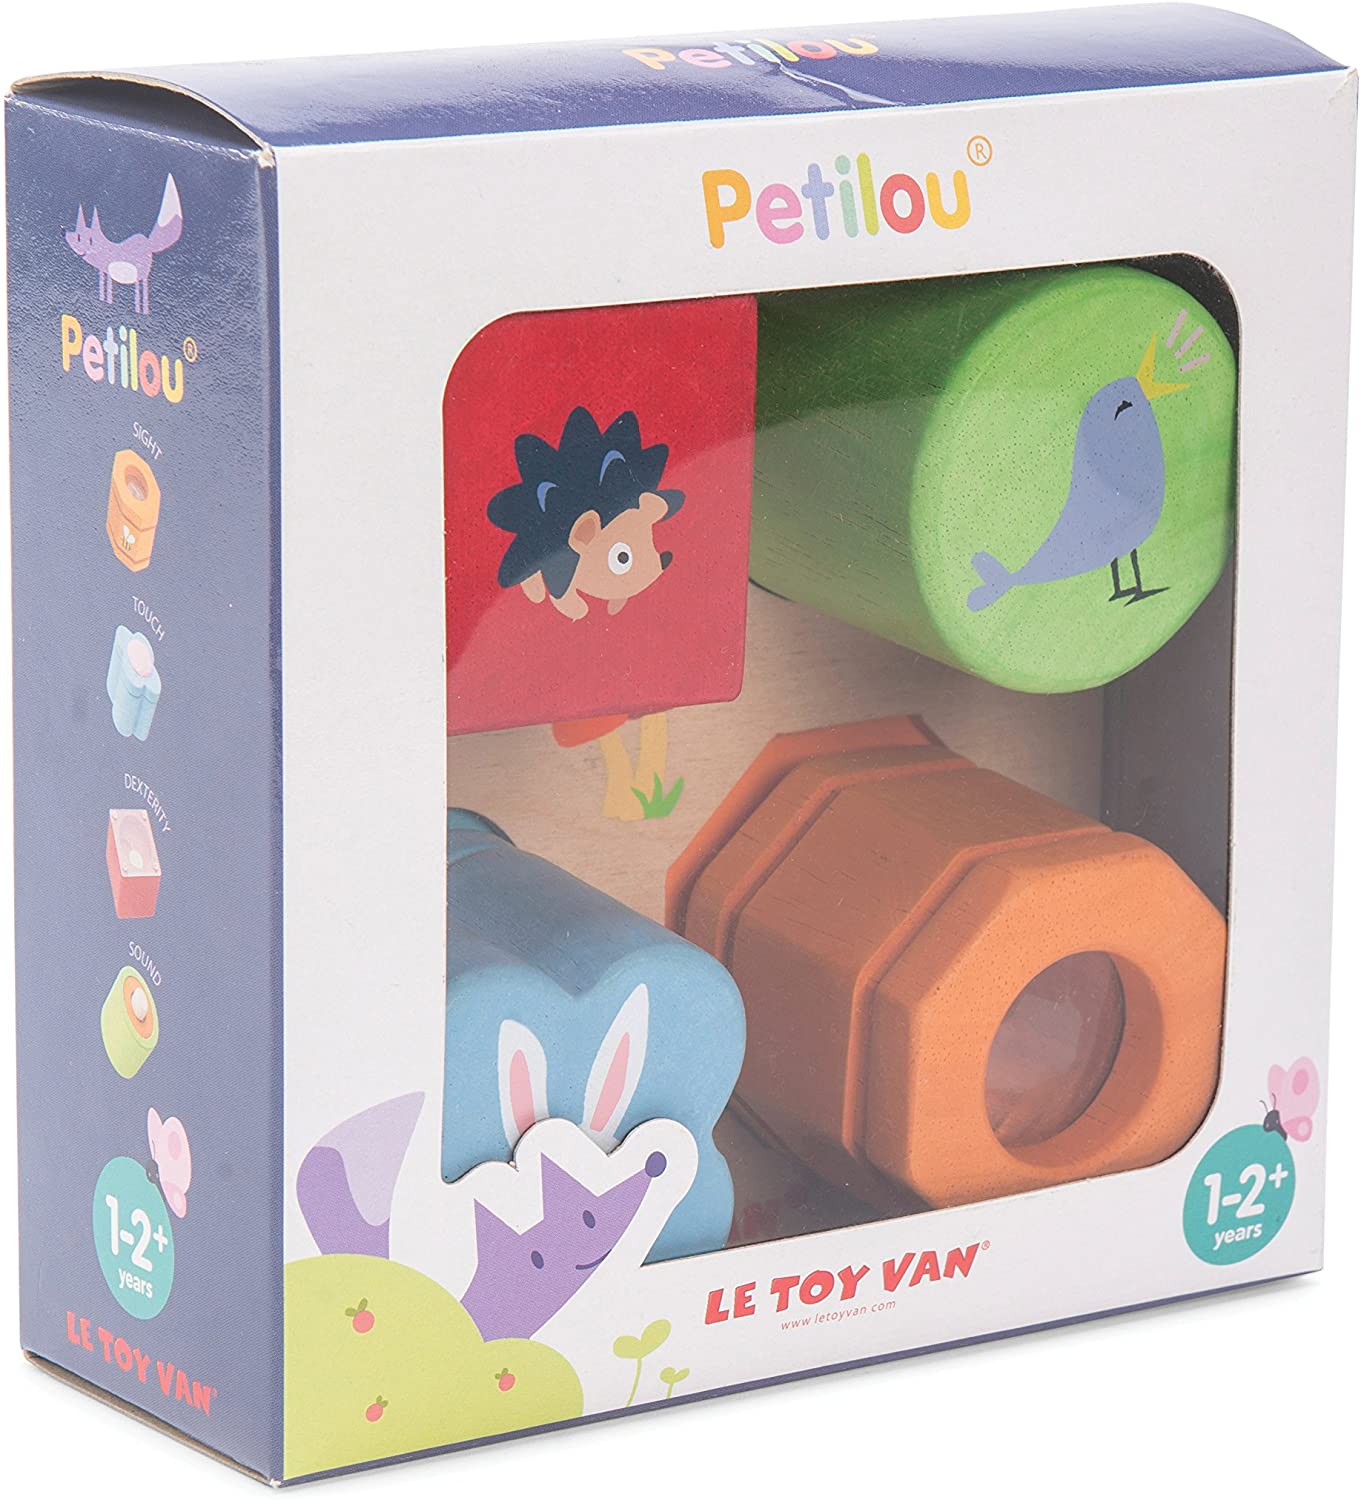 Le Toy Van - Petilou Wooden Tray 4-Piece Multi-Sensory Montessori Toy